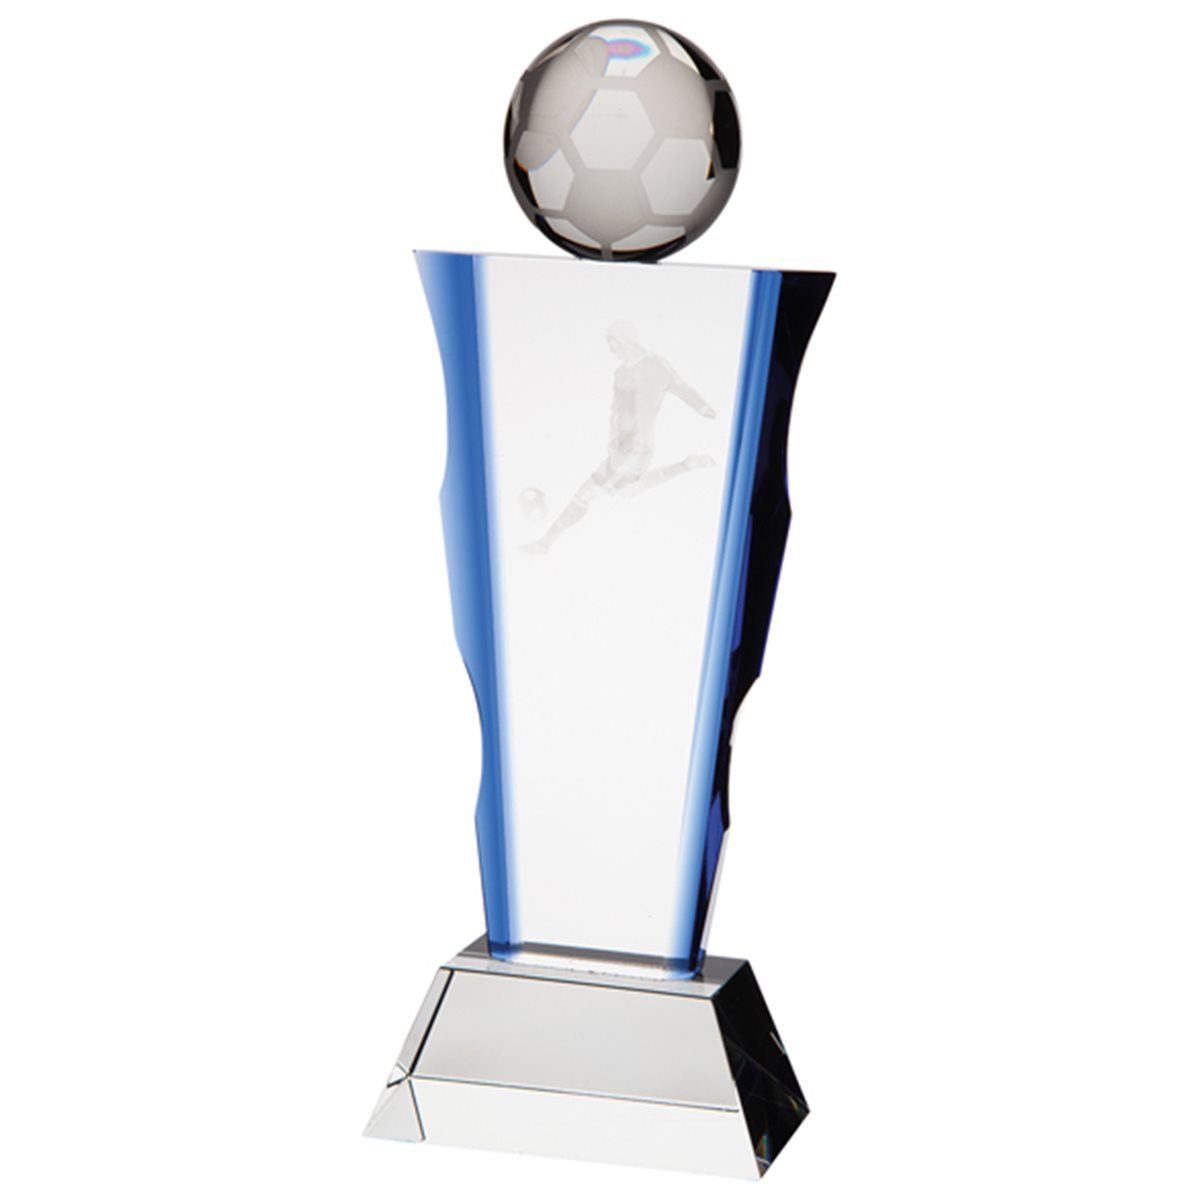 Celestial Football Glass Award CR20228